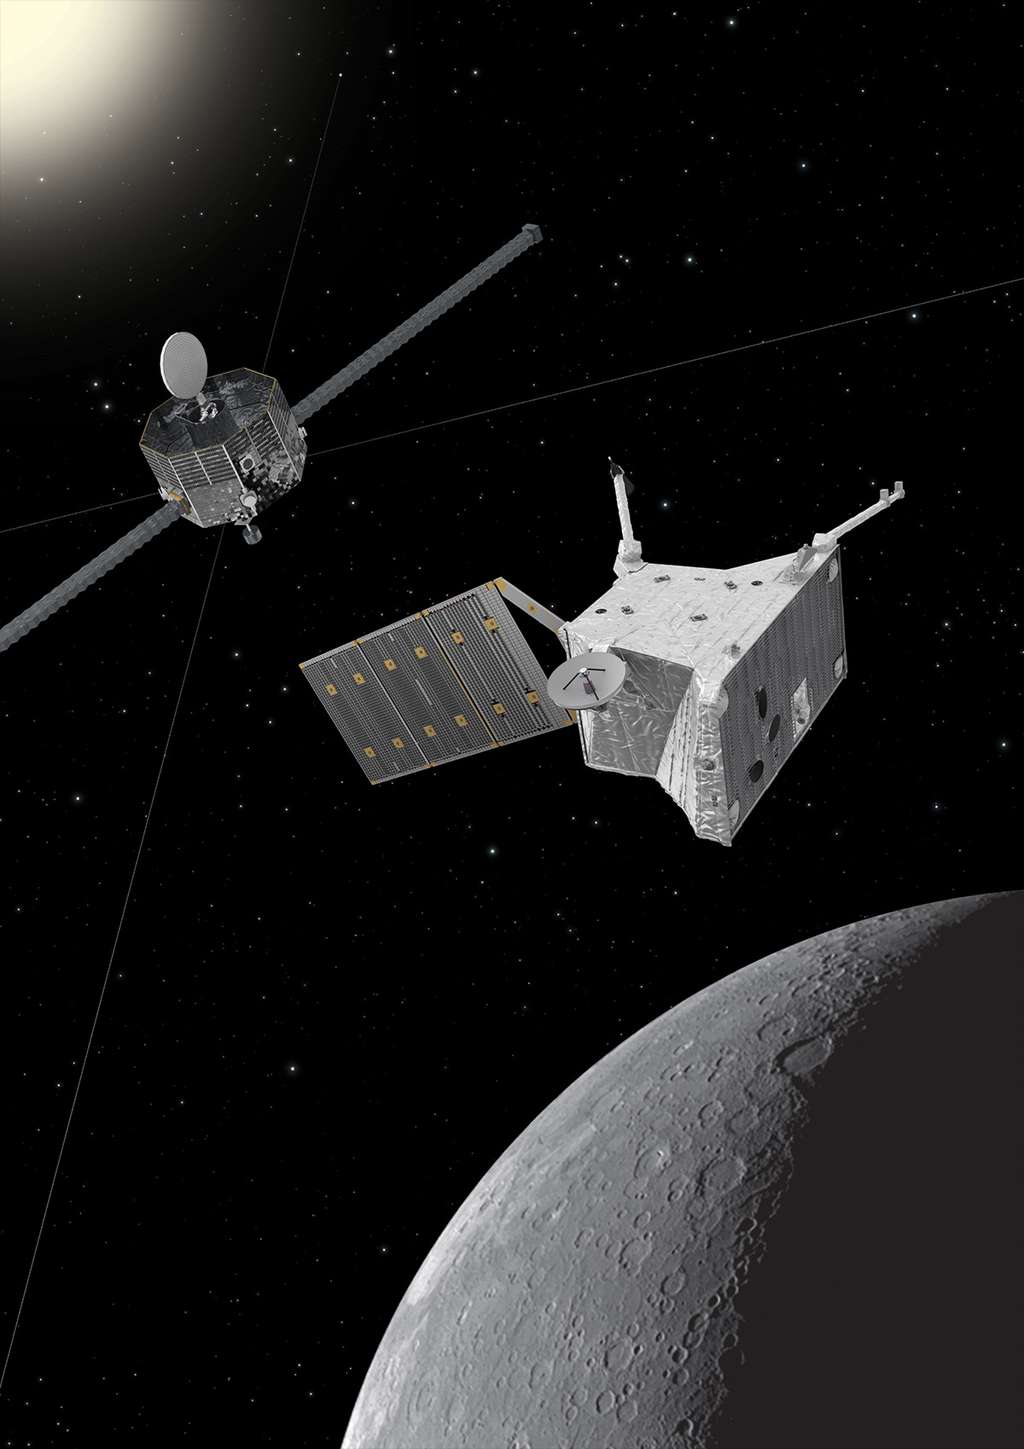  Vue d'artiste de BepiColombo autour de Mercure. La mission comprend le <em>Mercury Planetary Orbiter</em> de l'ESA (en avant-plan) et le <em>Mercury Magnetospheric Orbiter</em> de la Jaxa (en arrière-plan). L'image de Mercure a été prise par la sonde Messenger de la Nasa. © Sonde : ESA/ATG medialab ; Mercure : Nasa/<em>Johns Hopkins University Applied Physics Laboratory</em>/<em>Carnegie Institution of Washington</em>.